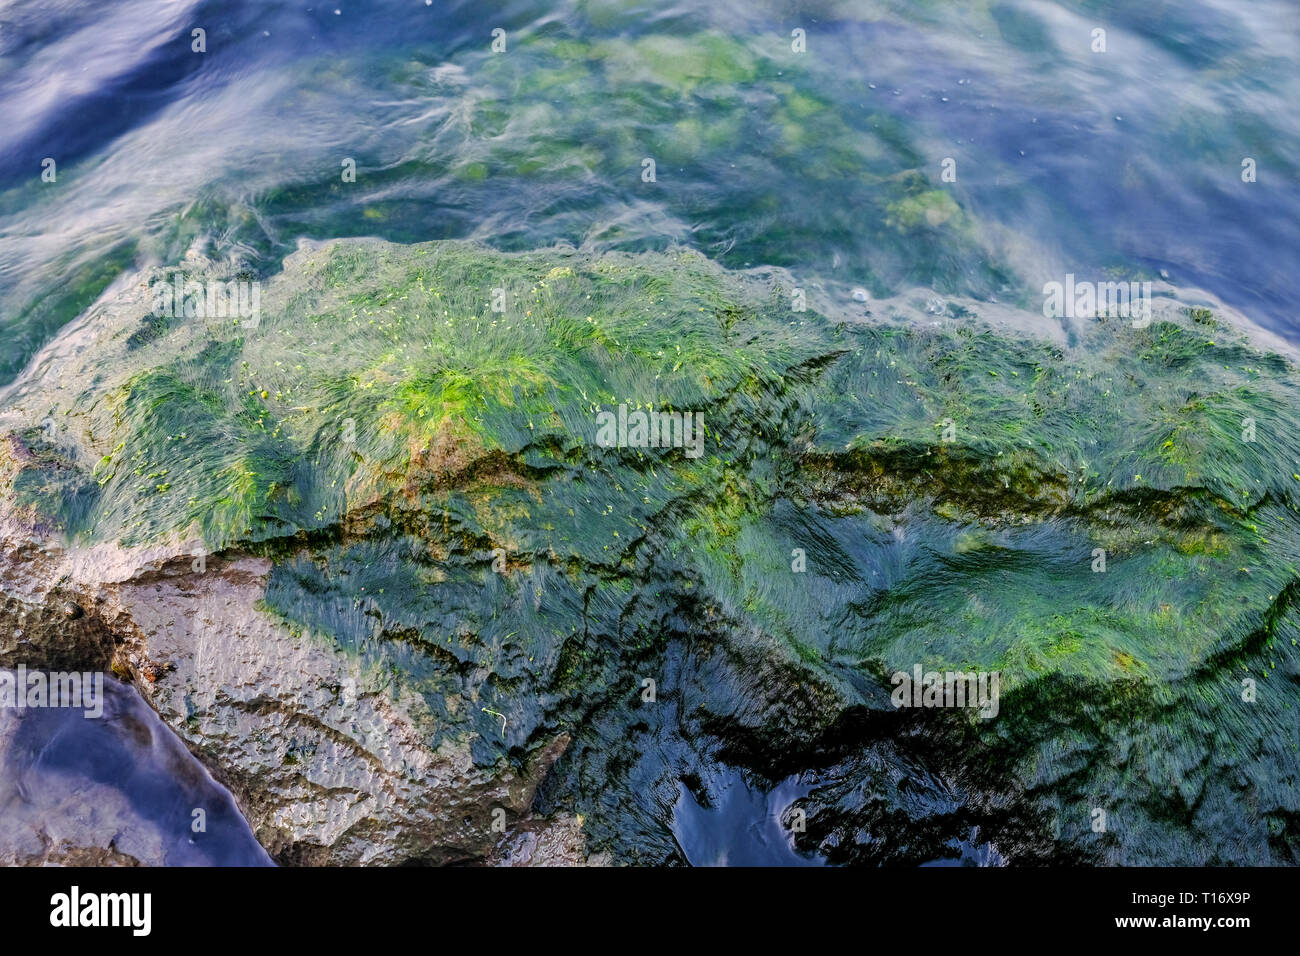 Dettaglio colpo di moss lichen ( alghe) sulla roccia bagnata in riva al mare Foto Stock